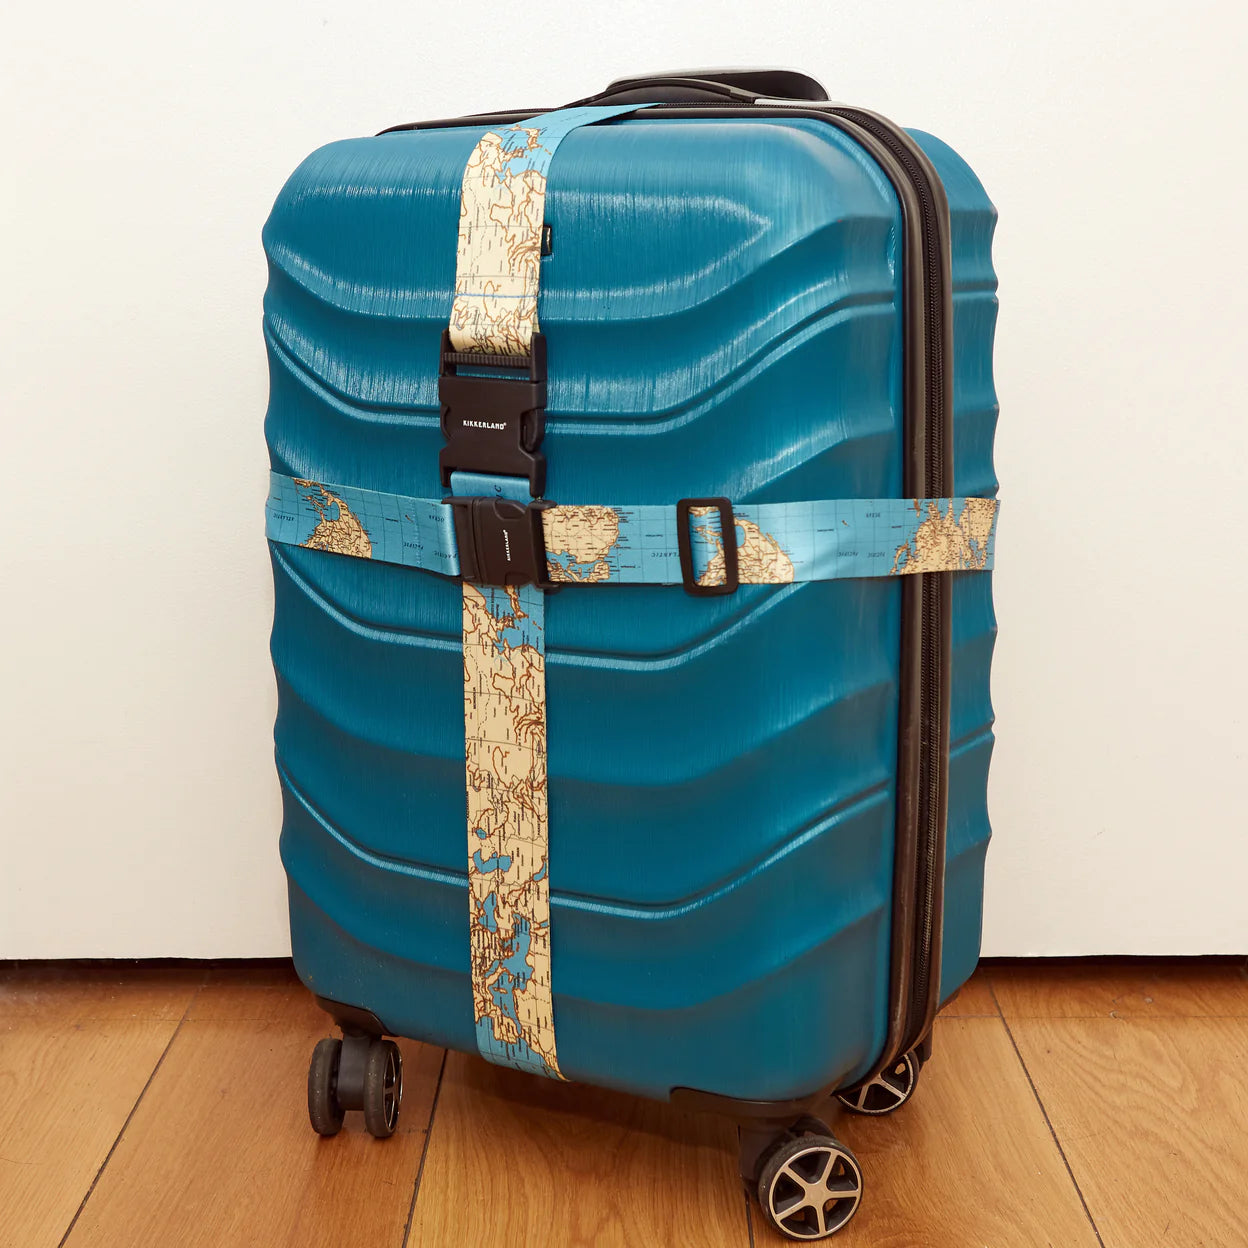 Kikkerland World Traveler Luggage Straps